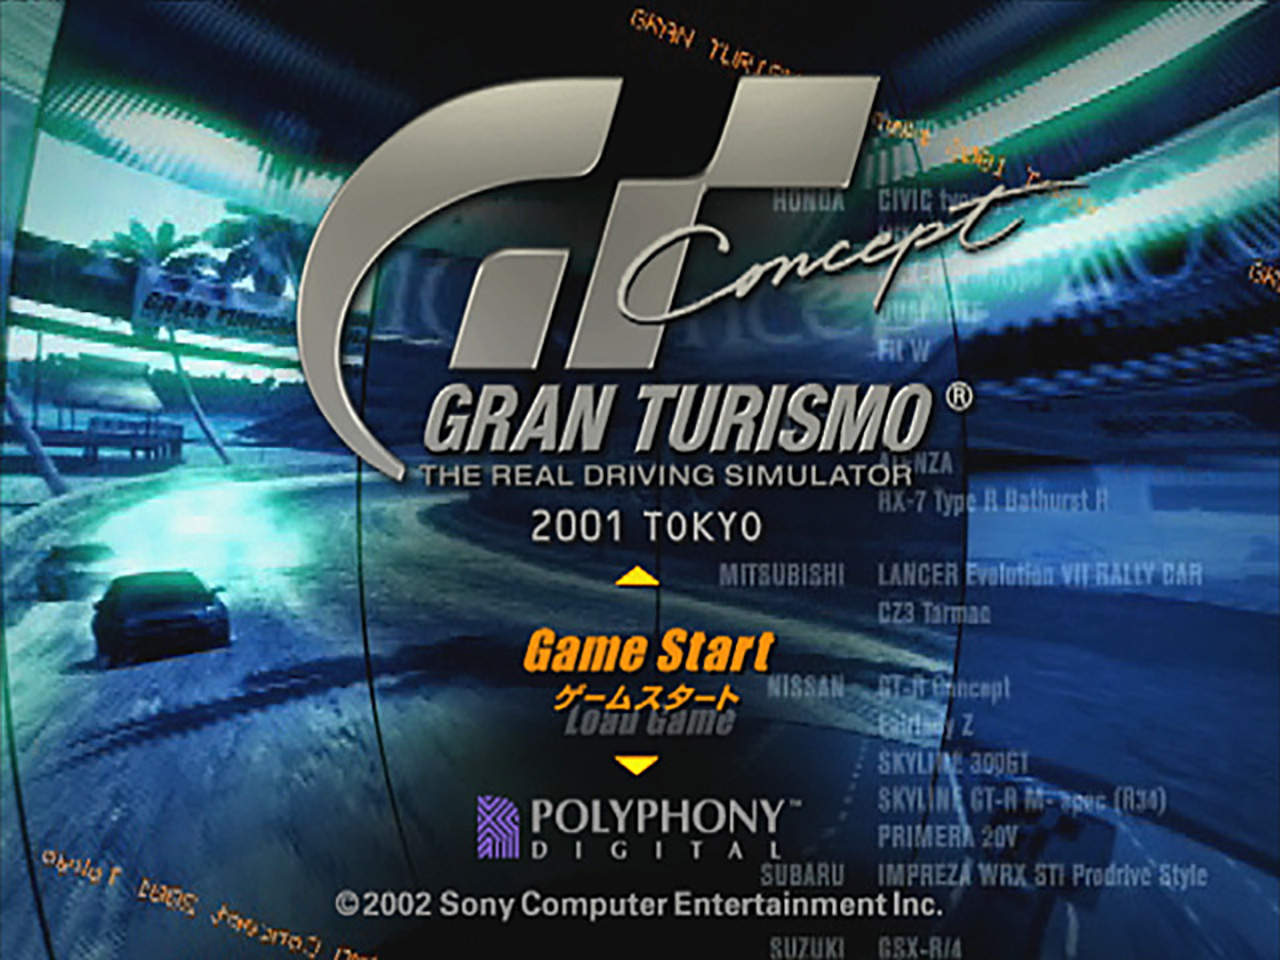  Ford Ka in Gran Turismo Concept: 2002 Tokyo-Geneva